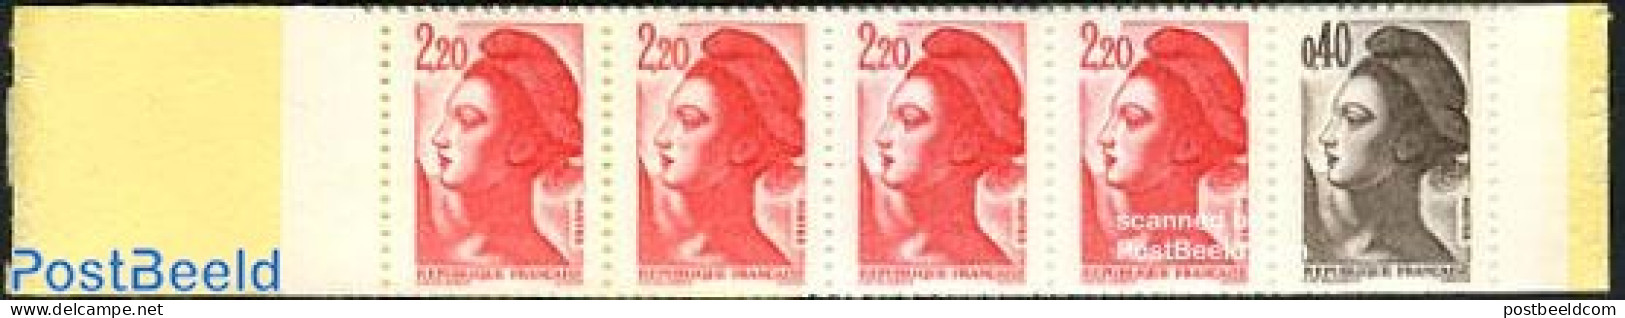 France 1987 Definitives Booklet, Mint NH, Stamp Booklets - Nuovi